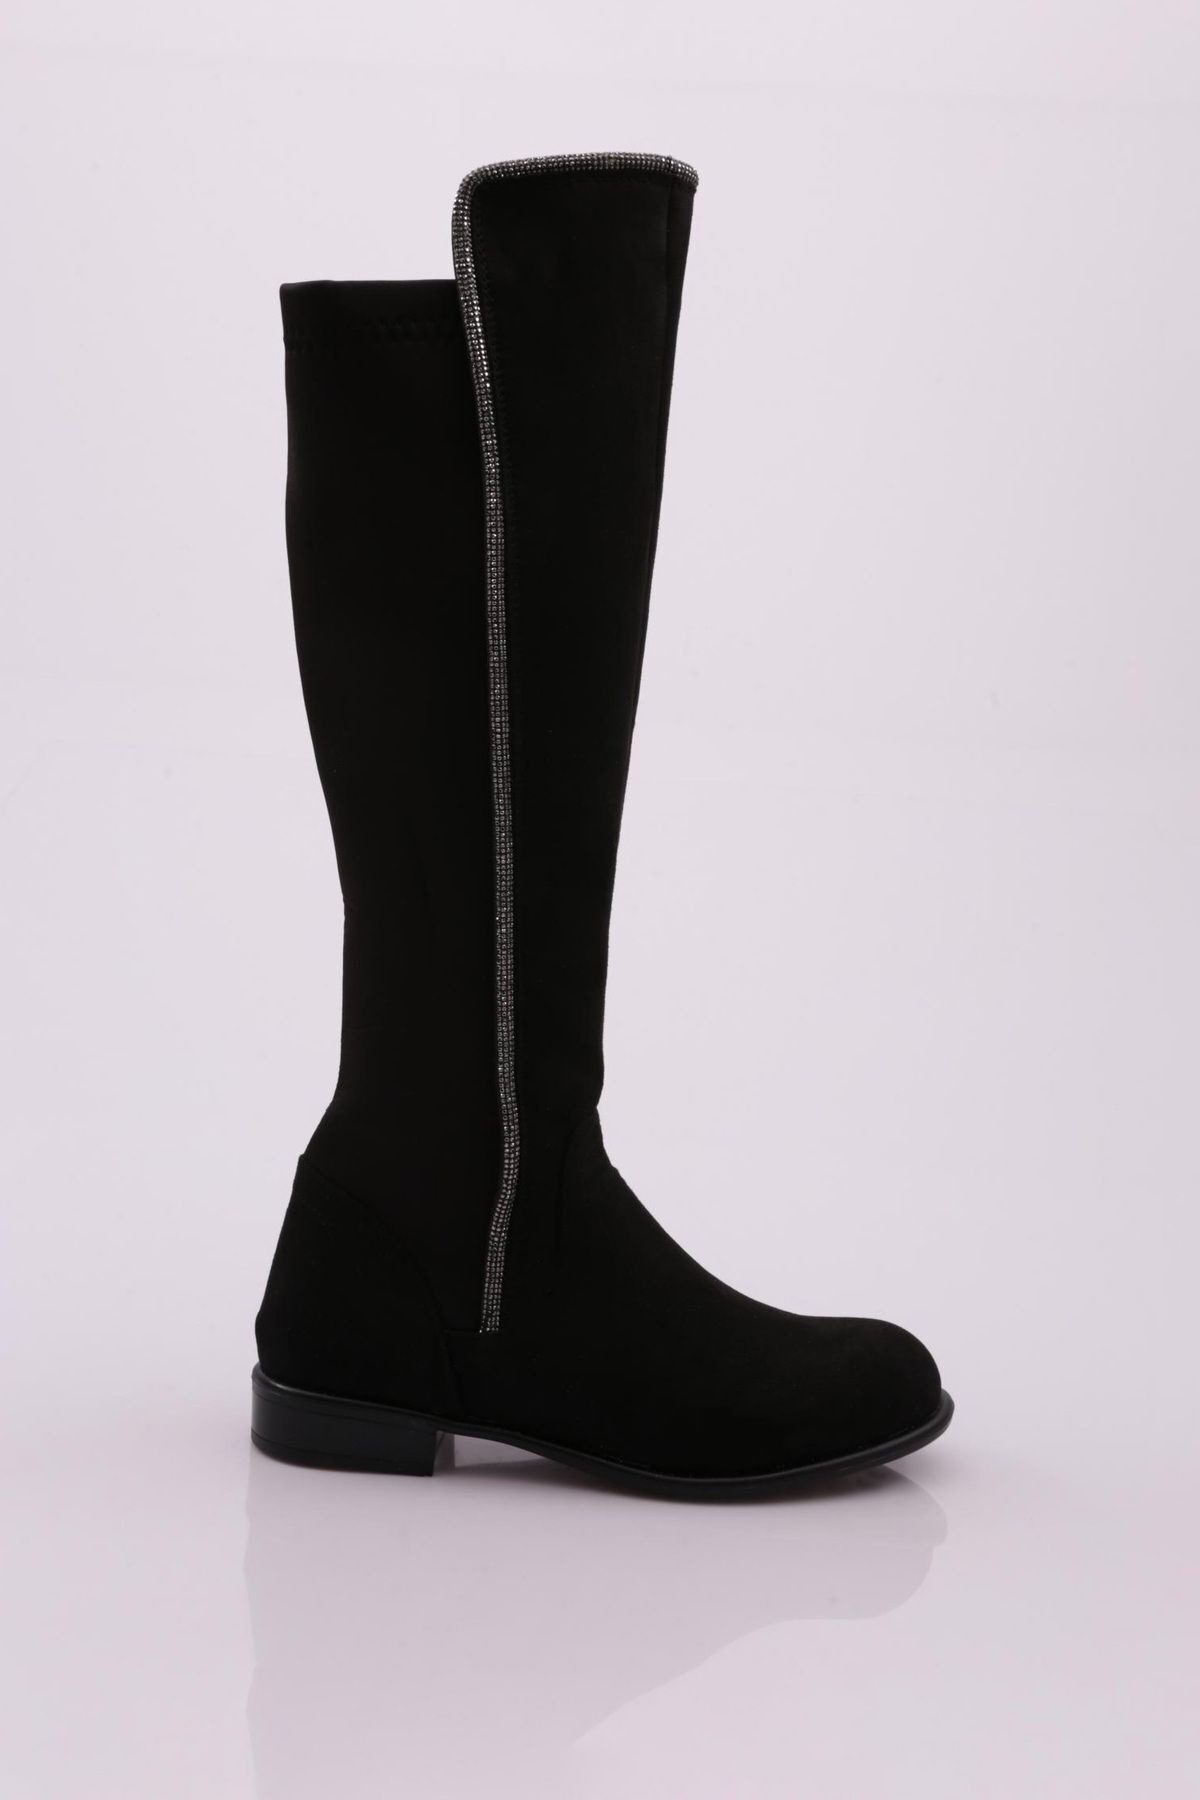 Dgn 508 Kadın Arkası Stretch Yan Taşlı Şerit Knee High Flats Çizme Siyah Süet